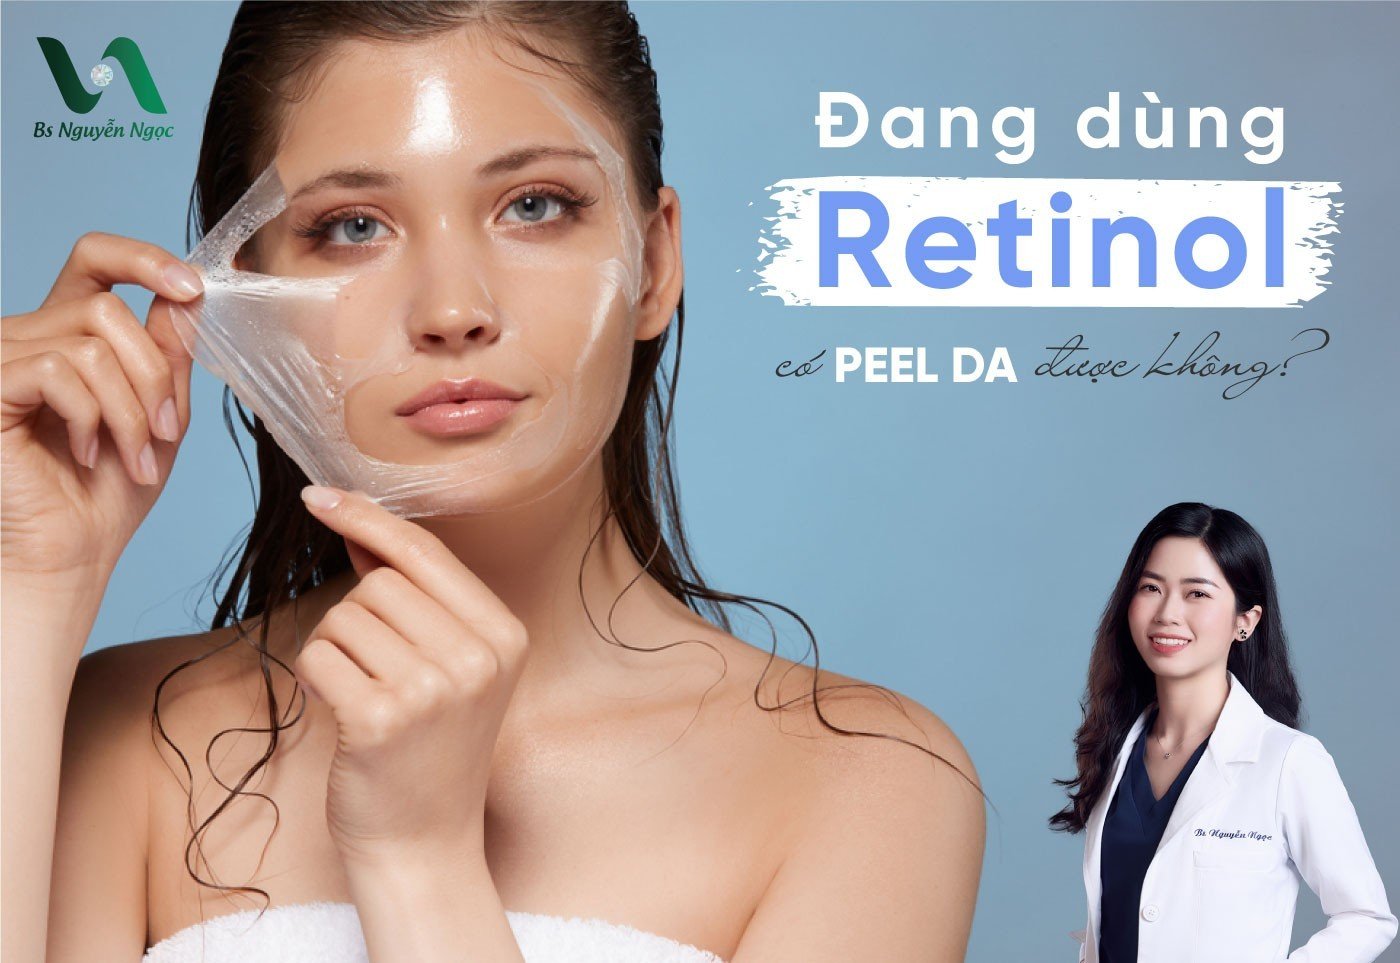 Đang dùng retinol có peel da được không?